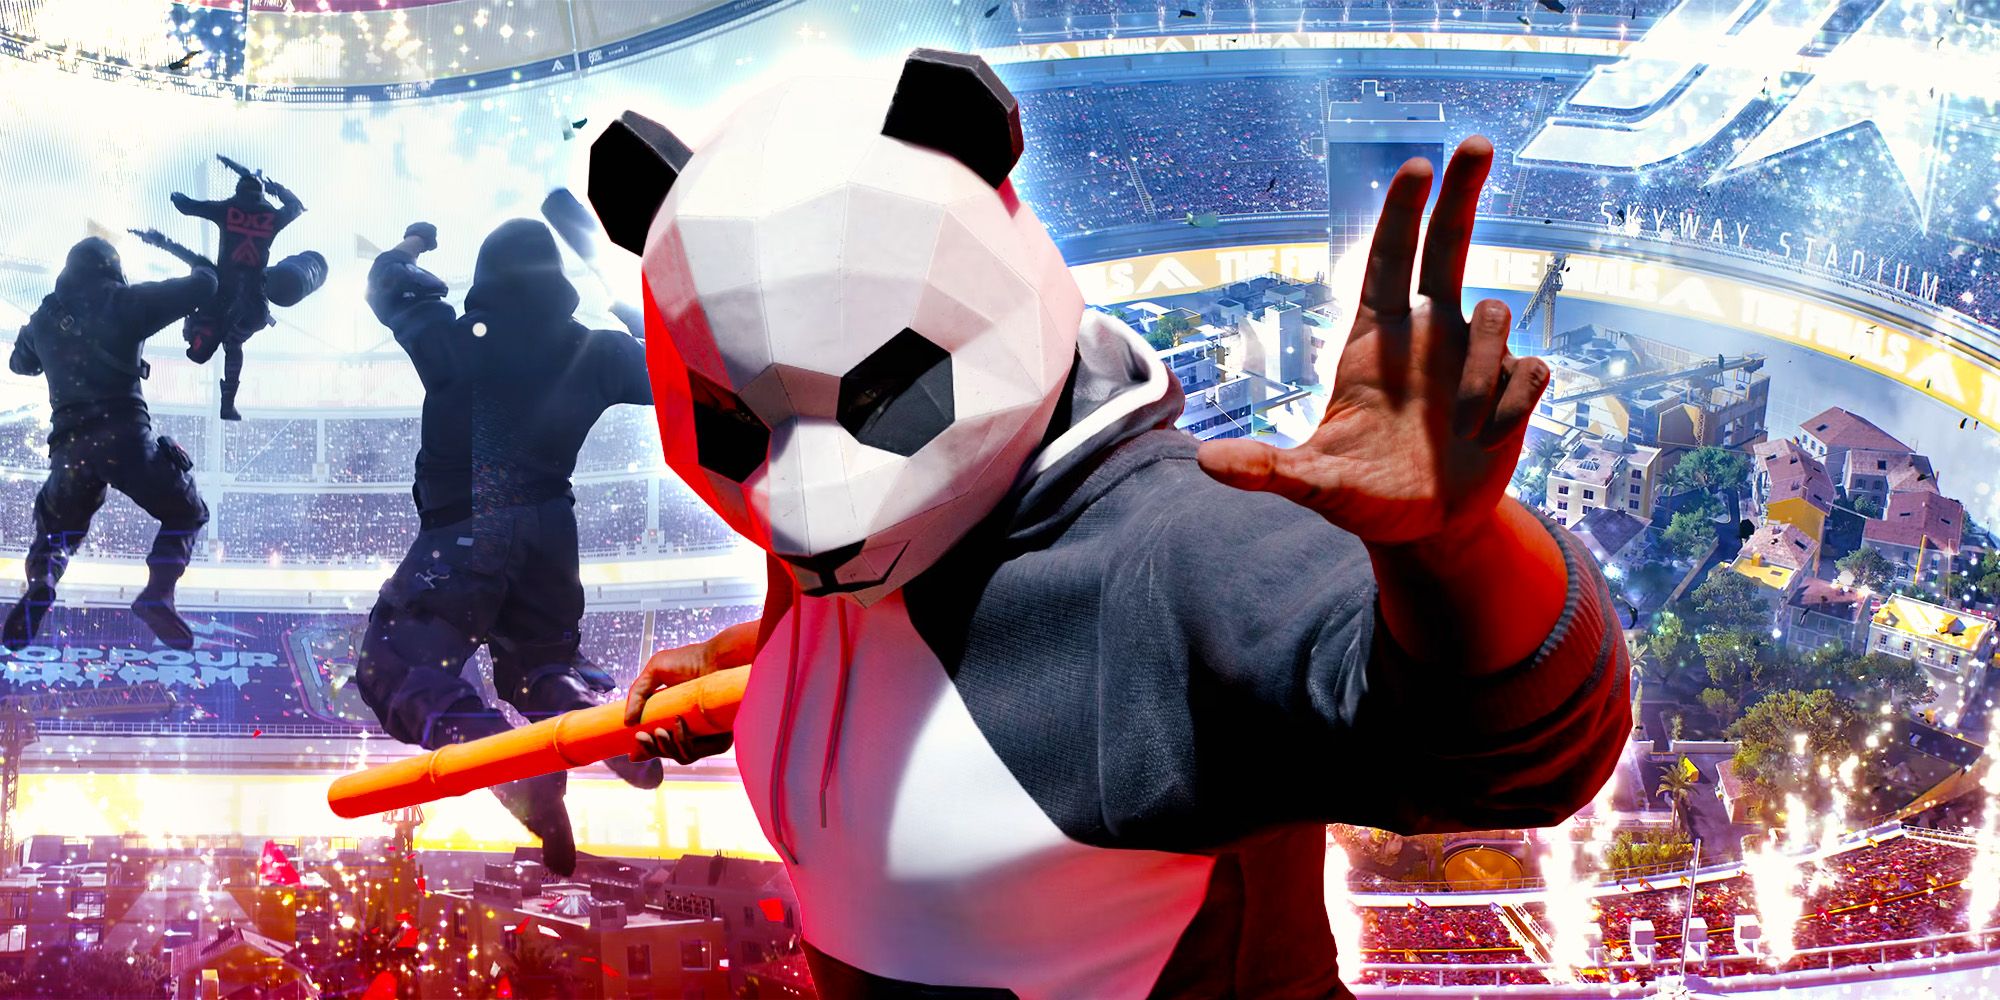 Arka planda kavga eden insanlarla birlikte panda ayısı kostümü giymiş bir kişi. 